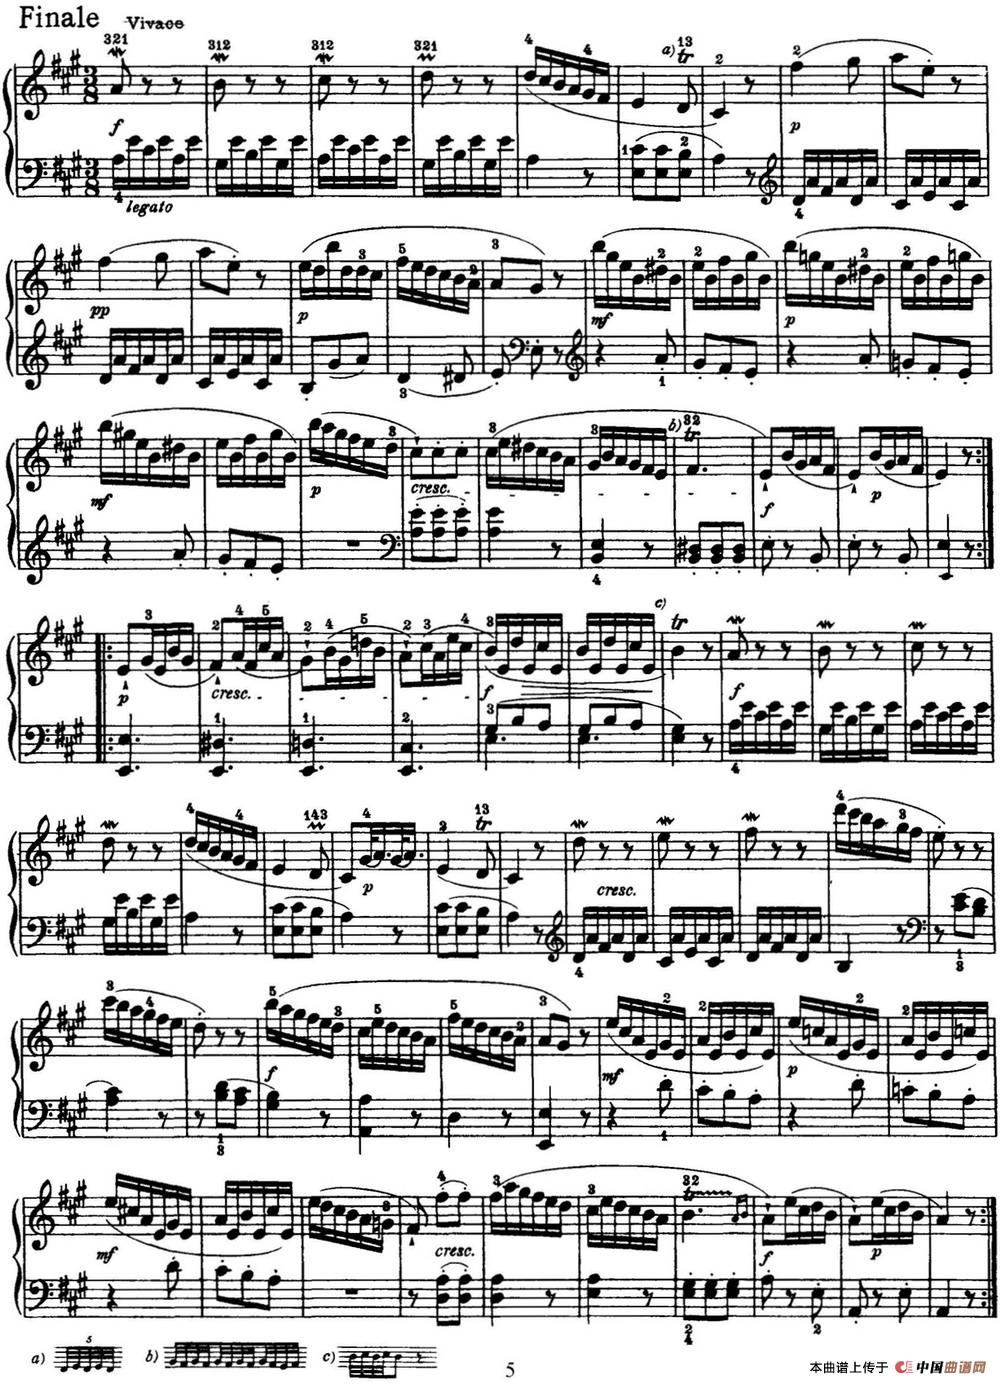 《海顿 钢琴奏鸣曲 Hob XVI 12 Divertimento A major》钢琴曲谱图分享